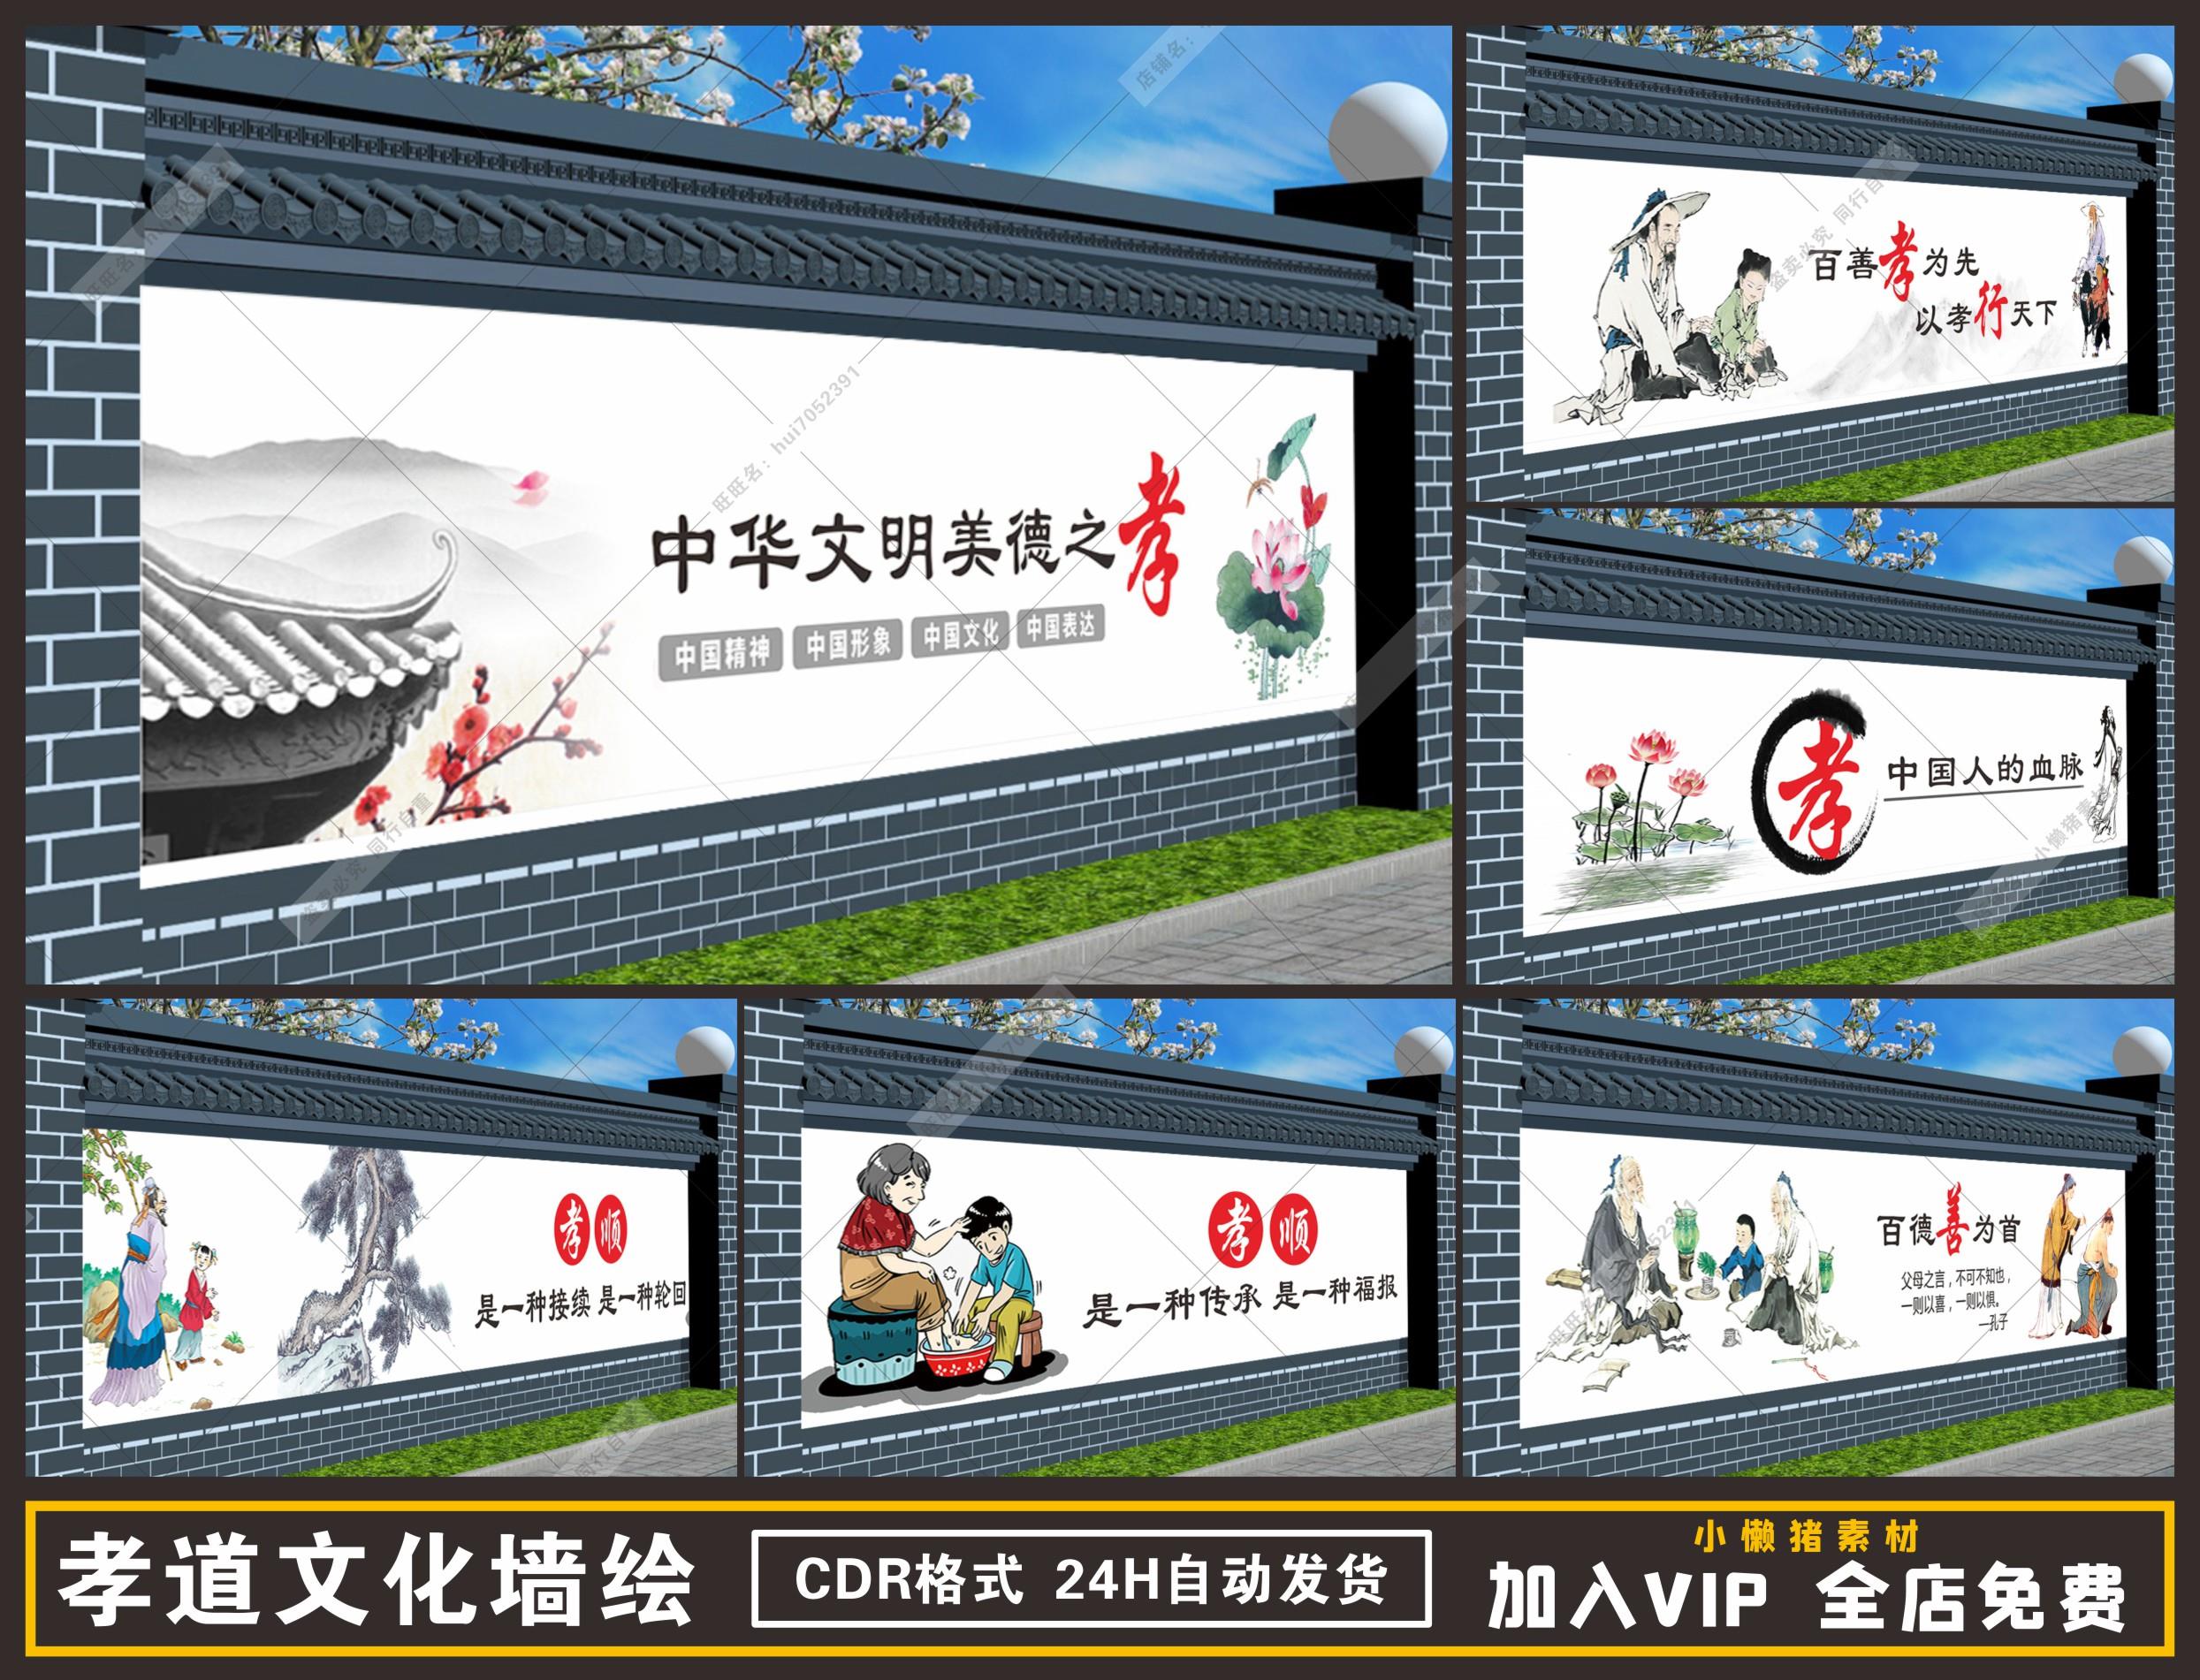 ZZ012美丽新农村孝道孝顺文化围墙手绘墙绘彩绘画CDR设计素材模板